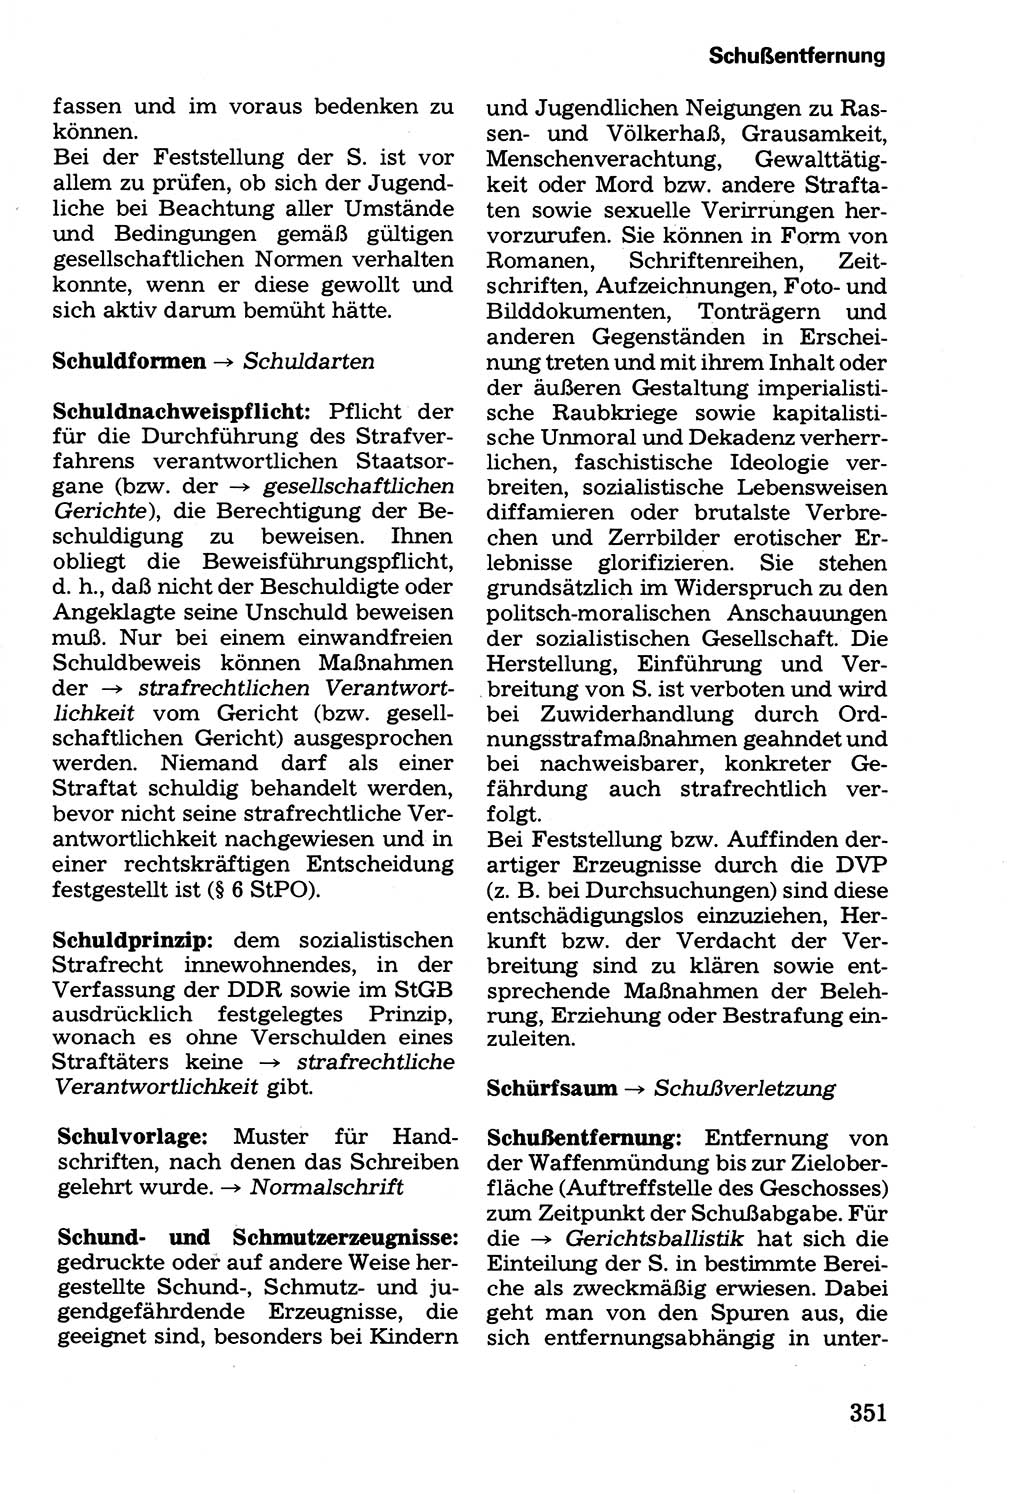 Wörterbuch der sozialistischen Kriminalistik [Deutsche Demokratische Republik (DDR)] 1981, Seite 351 (Wb. soz. Krim. DDR 1981, S. 351)